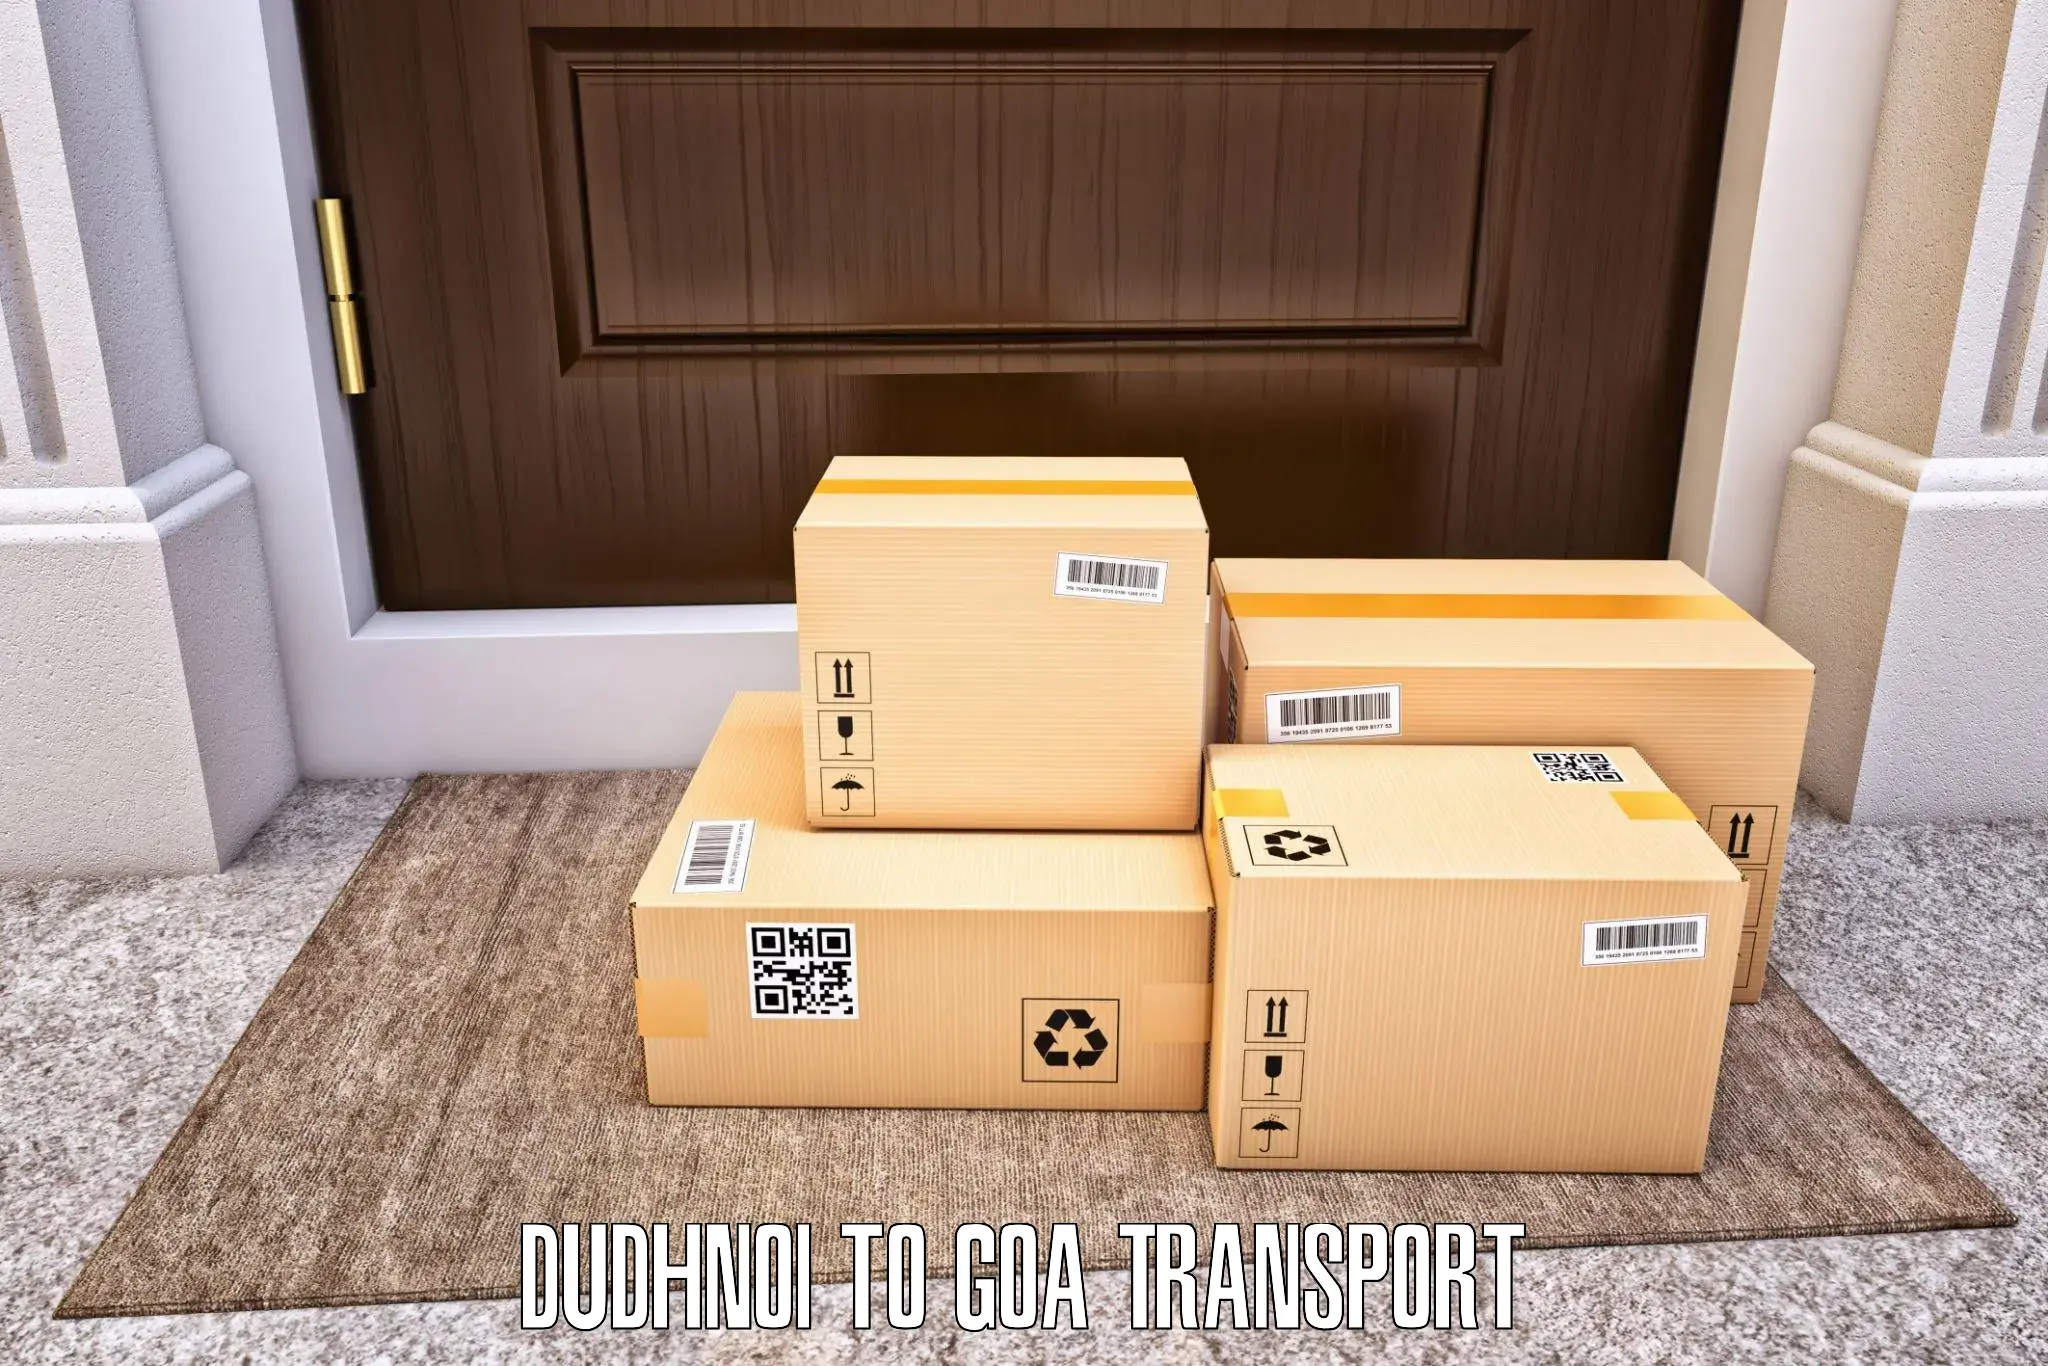 Cargo transport services Dudhnoi to IIT Goa